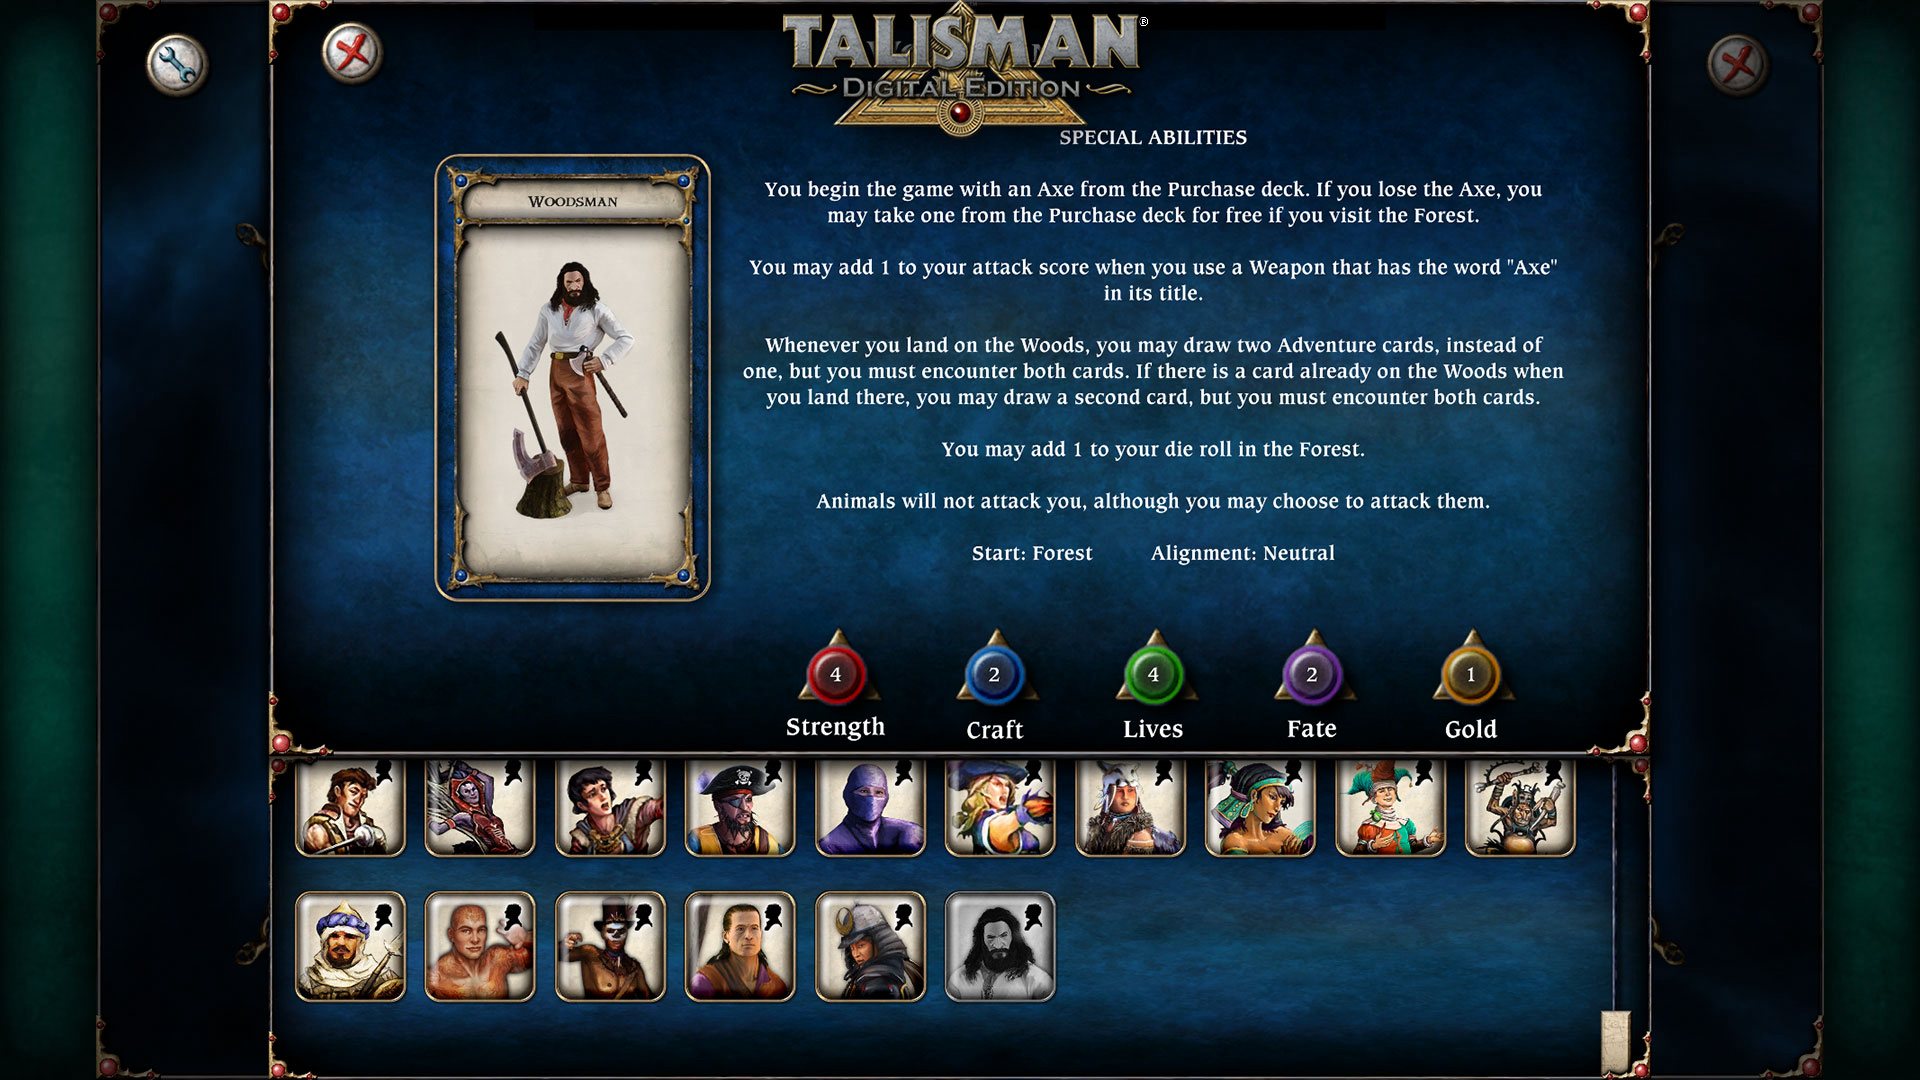 Talisman - Character Pack #17 - Woodsman DLC Steam CD Key 1.14 USD